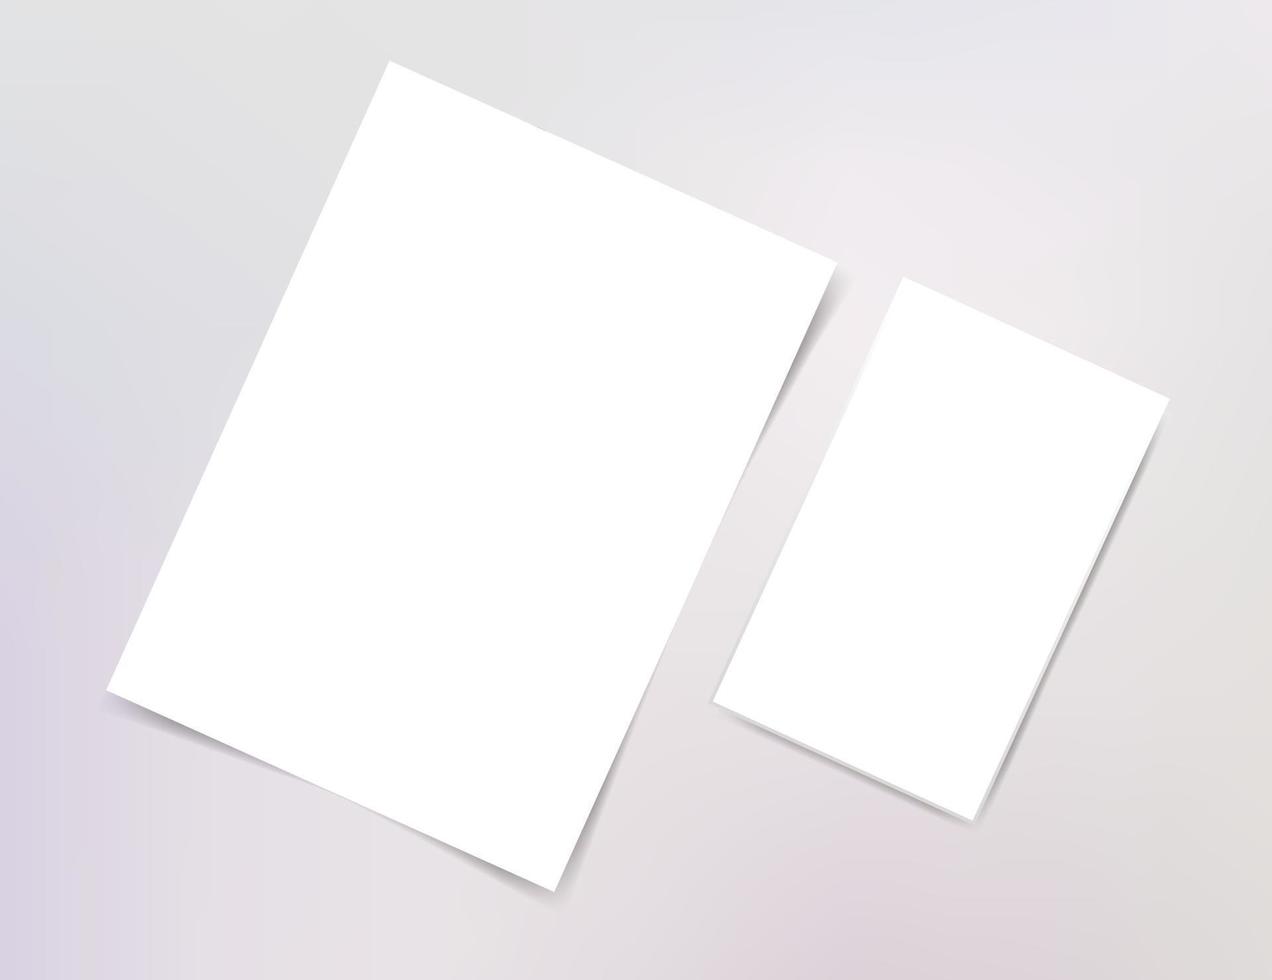 affiche carte de visite marque identité maquette template bannière couverture brochure flyer réaliste illustration blanc vide toile présentation bureau vitrine vecteur